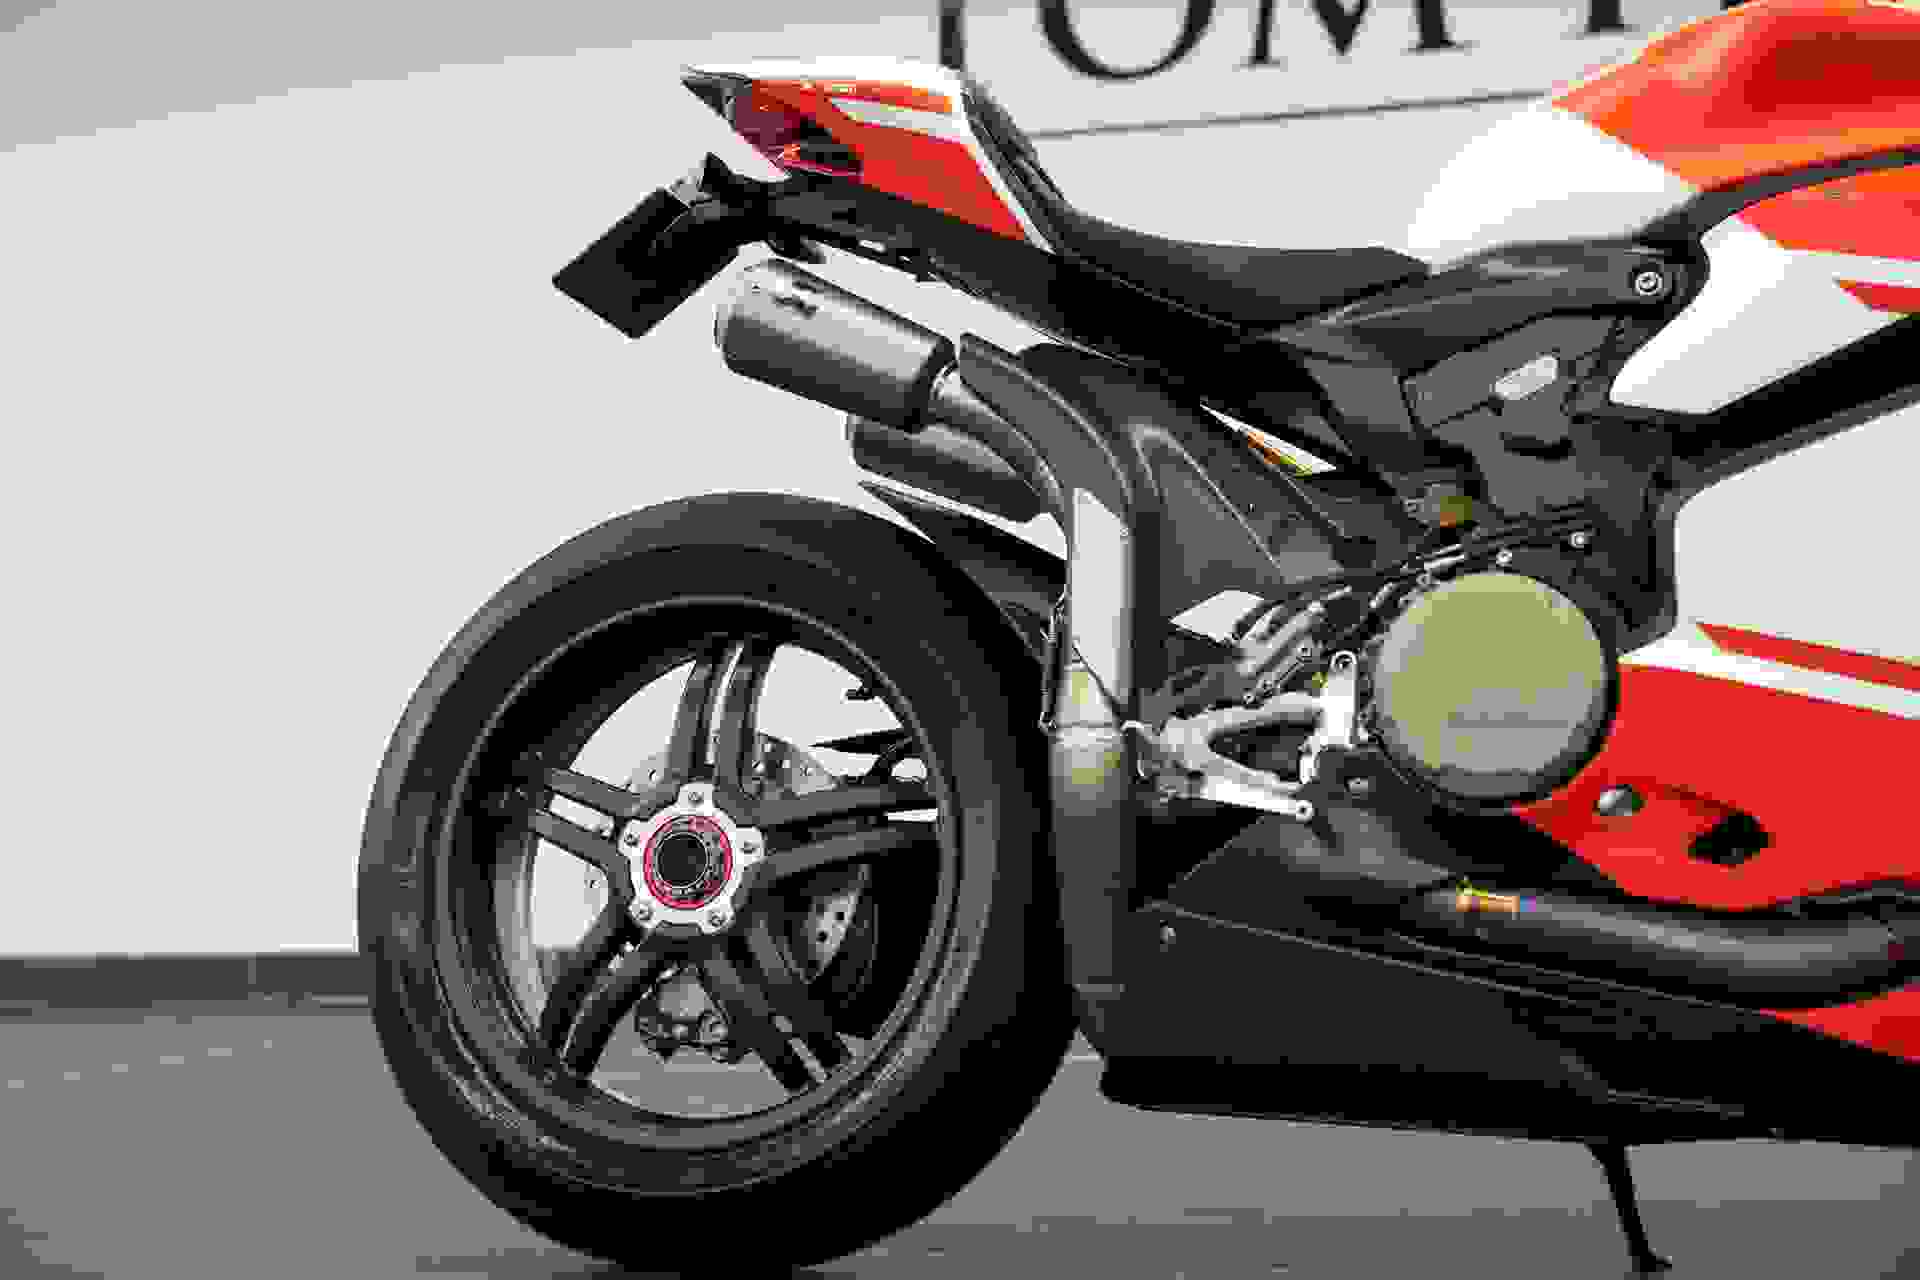 Ducati Superleggera Photo ec4d9a5d-4173-457c-b322-5773dc5c093b.jpg